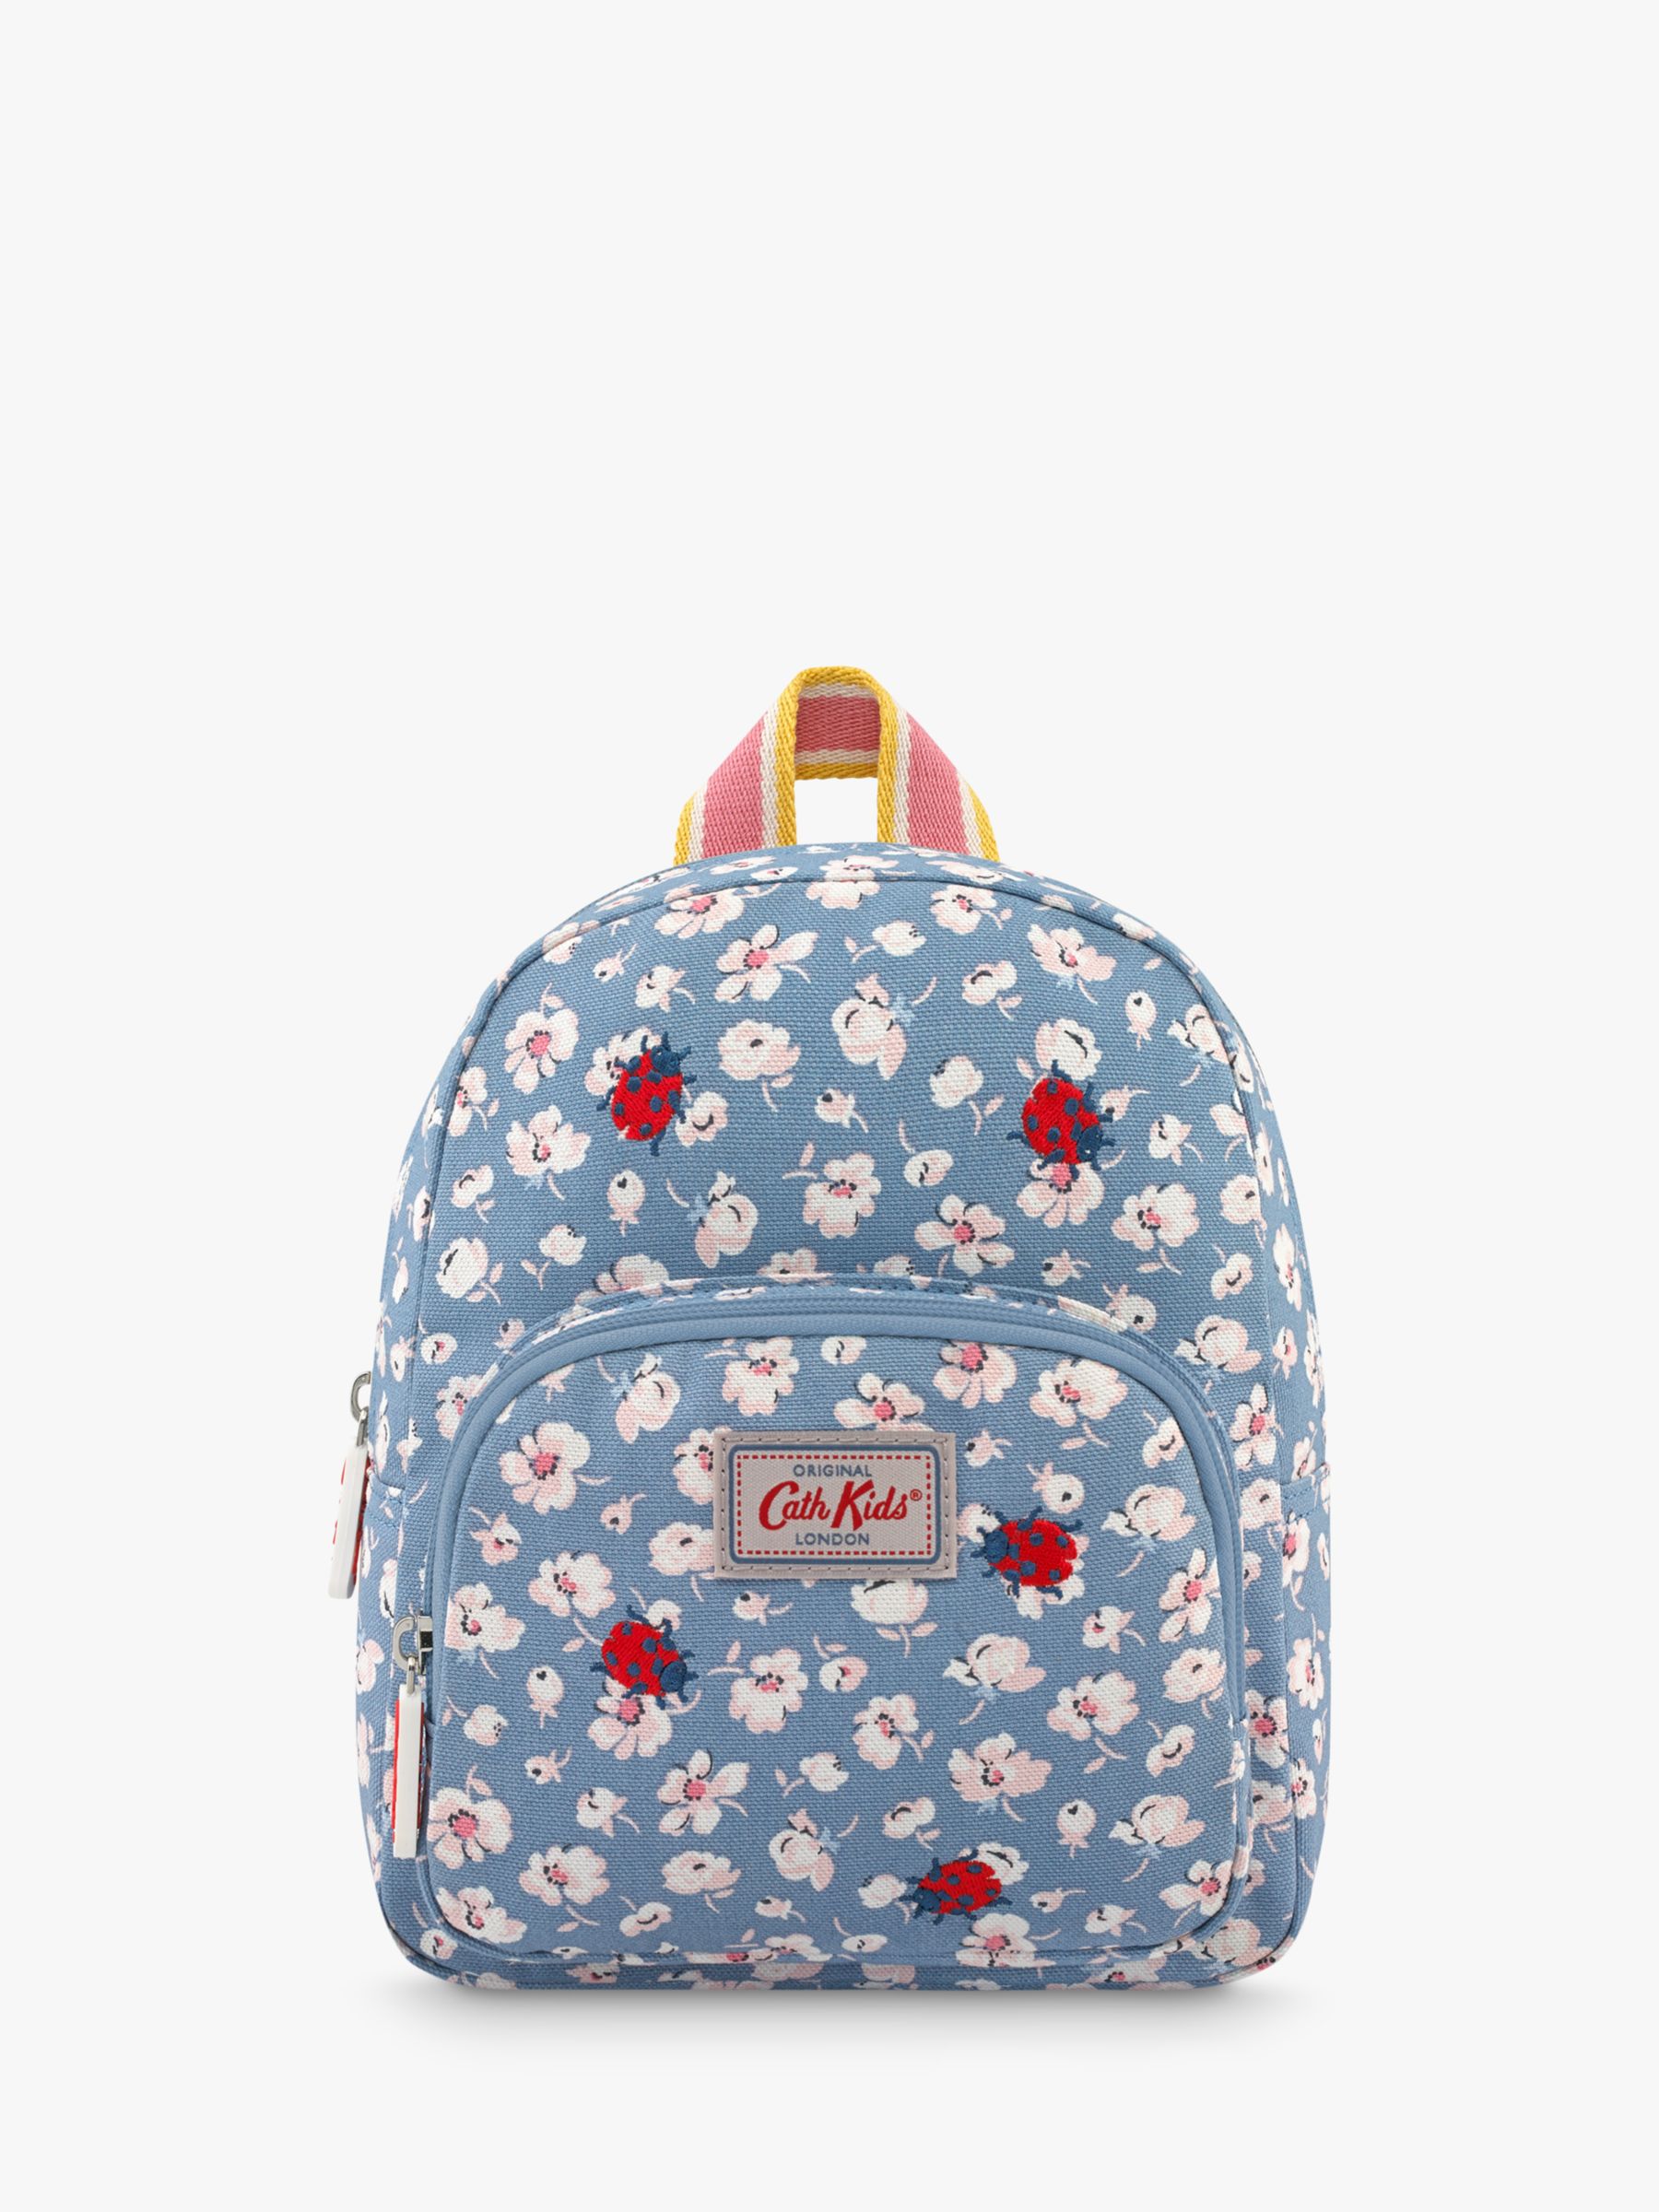 cath kidston children's backpack